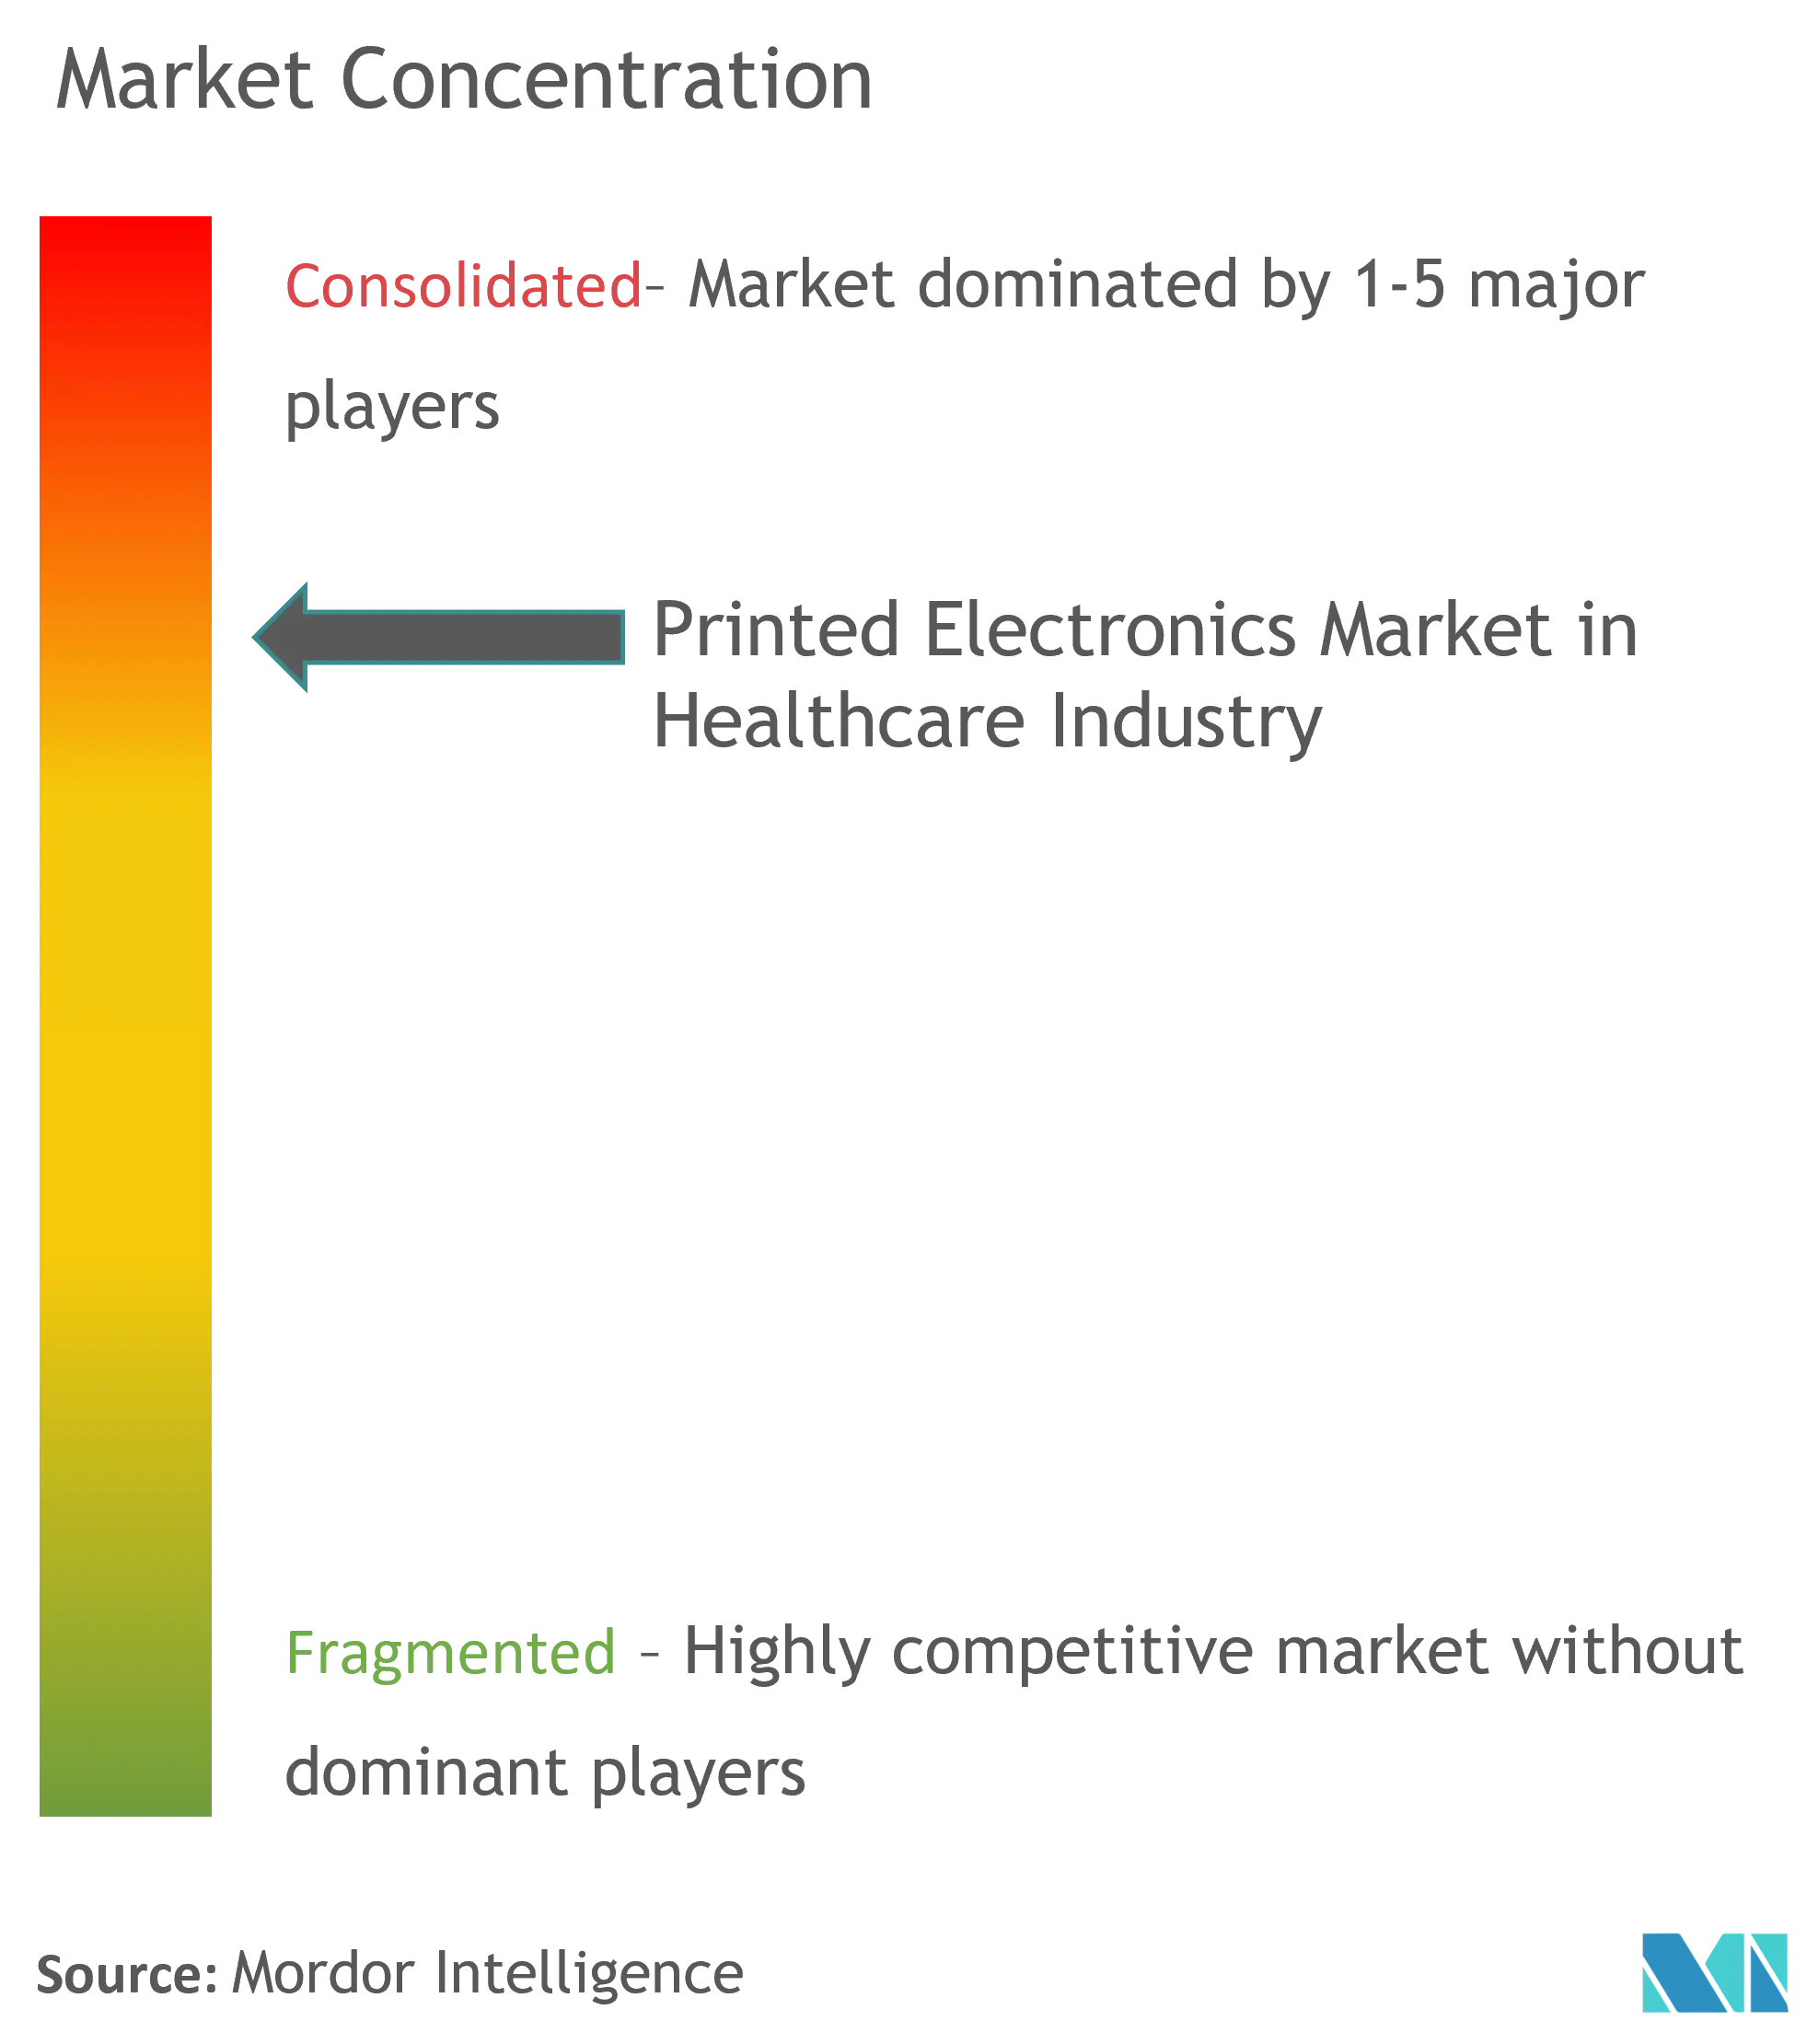 سوق الإلكترونيات المطبوعة في صناعة الرعاية الصحية - تركيز السوق